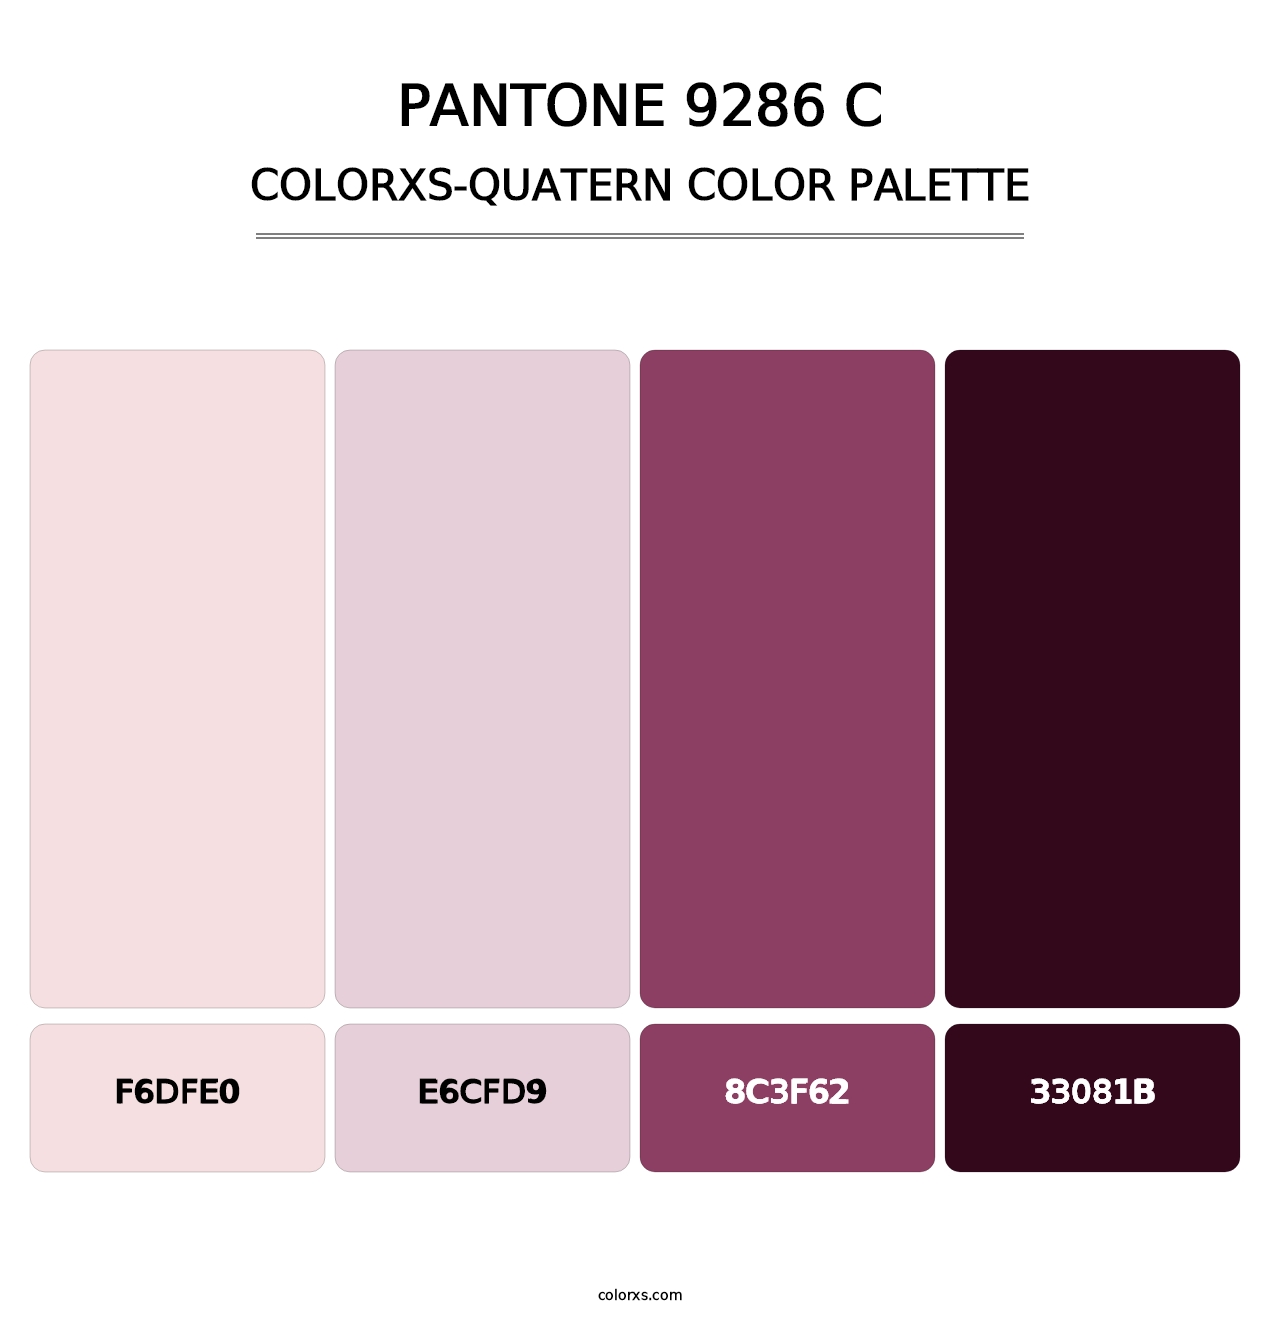 PANTONE 9286 C - Colorxs Quatern Palette